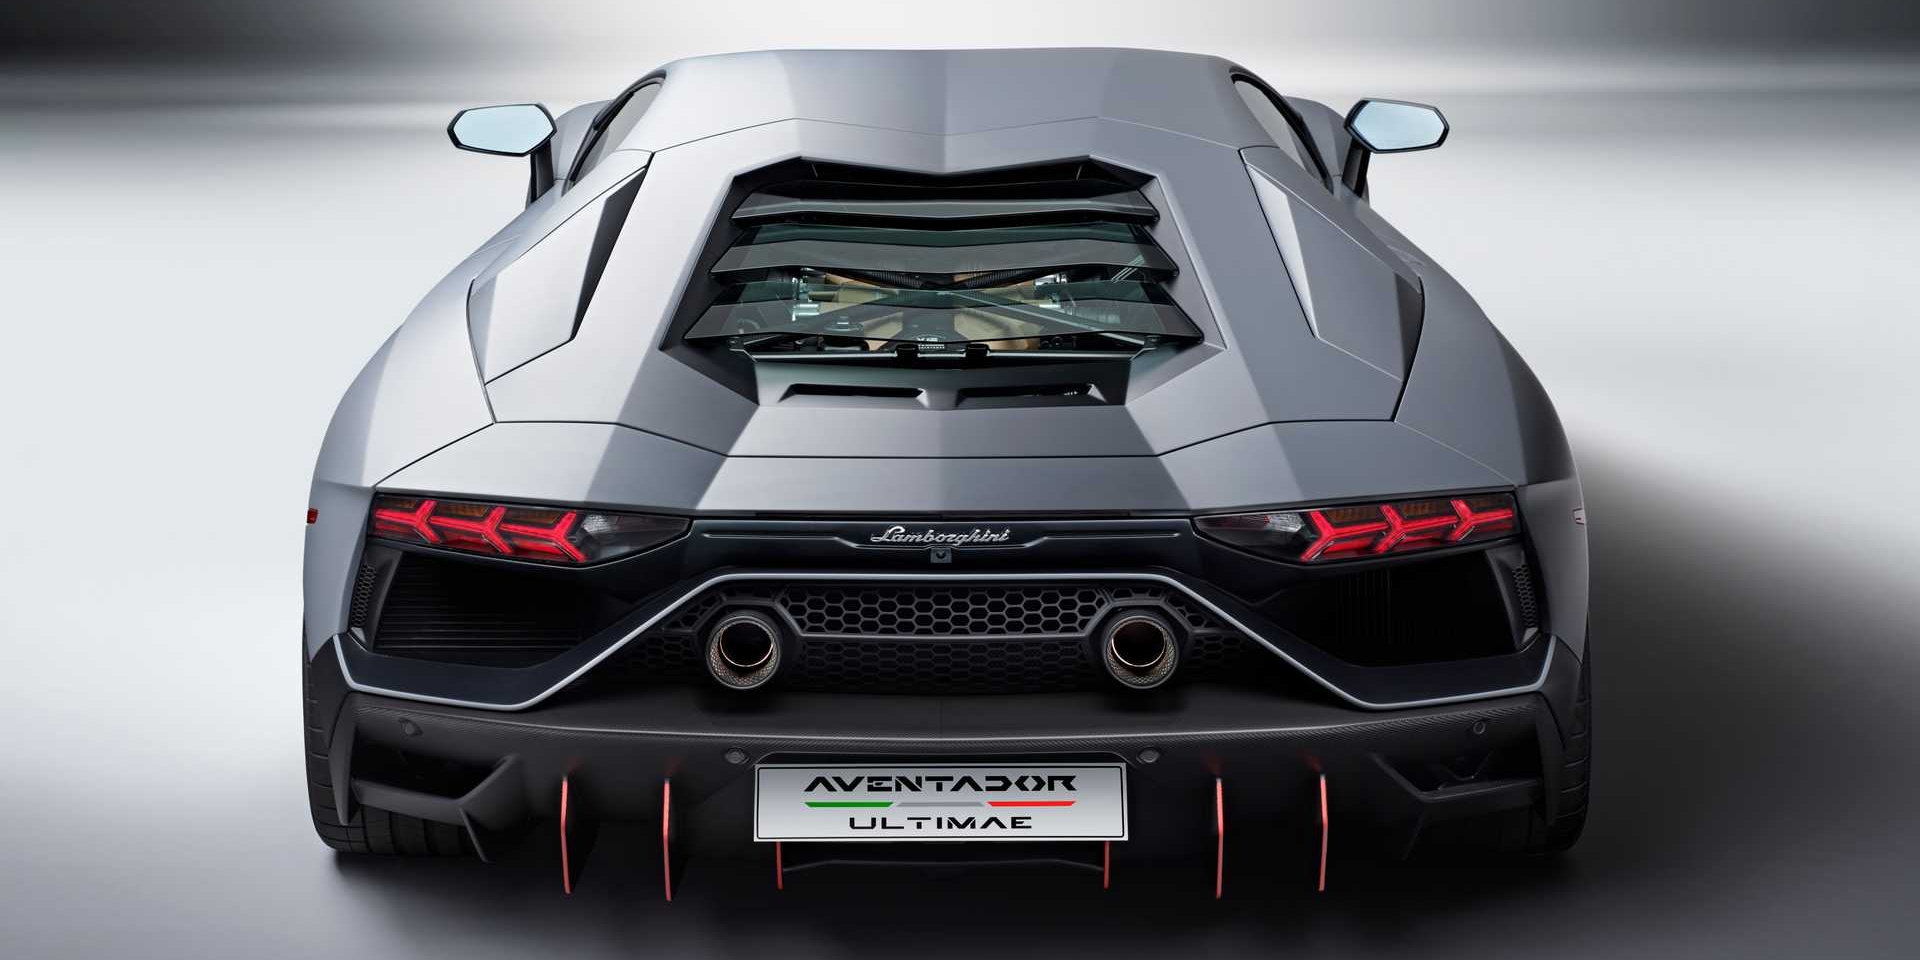 V12引擎的終章？Aventador Ultimae是Lamborghini最後的神作嗎？